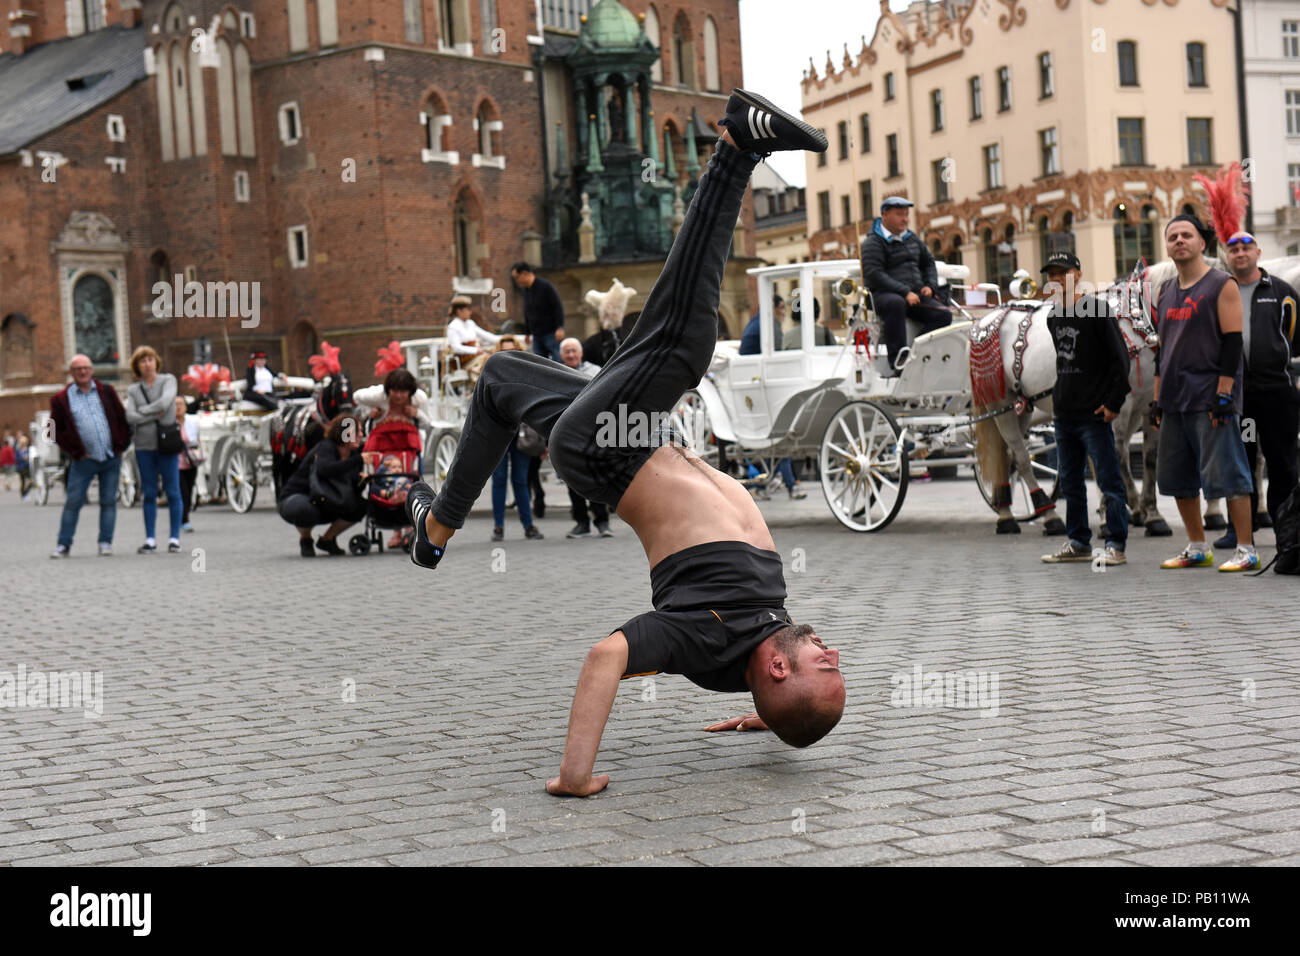 Straße Tänzer prerformers vor der Kutsche in Krakau, Polen Stockfoto